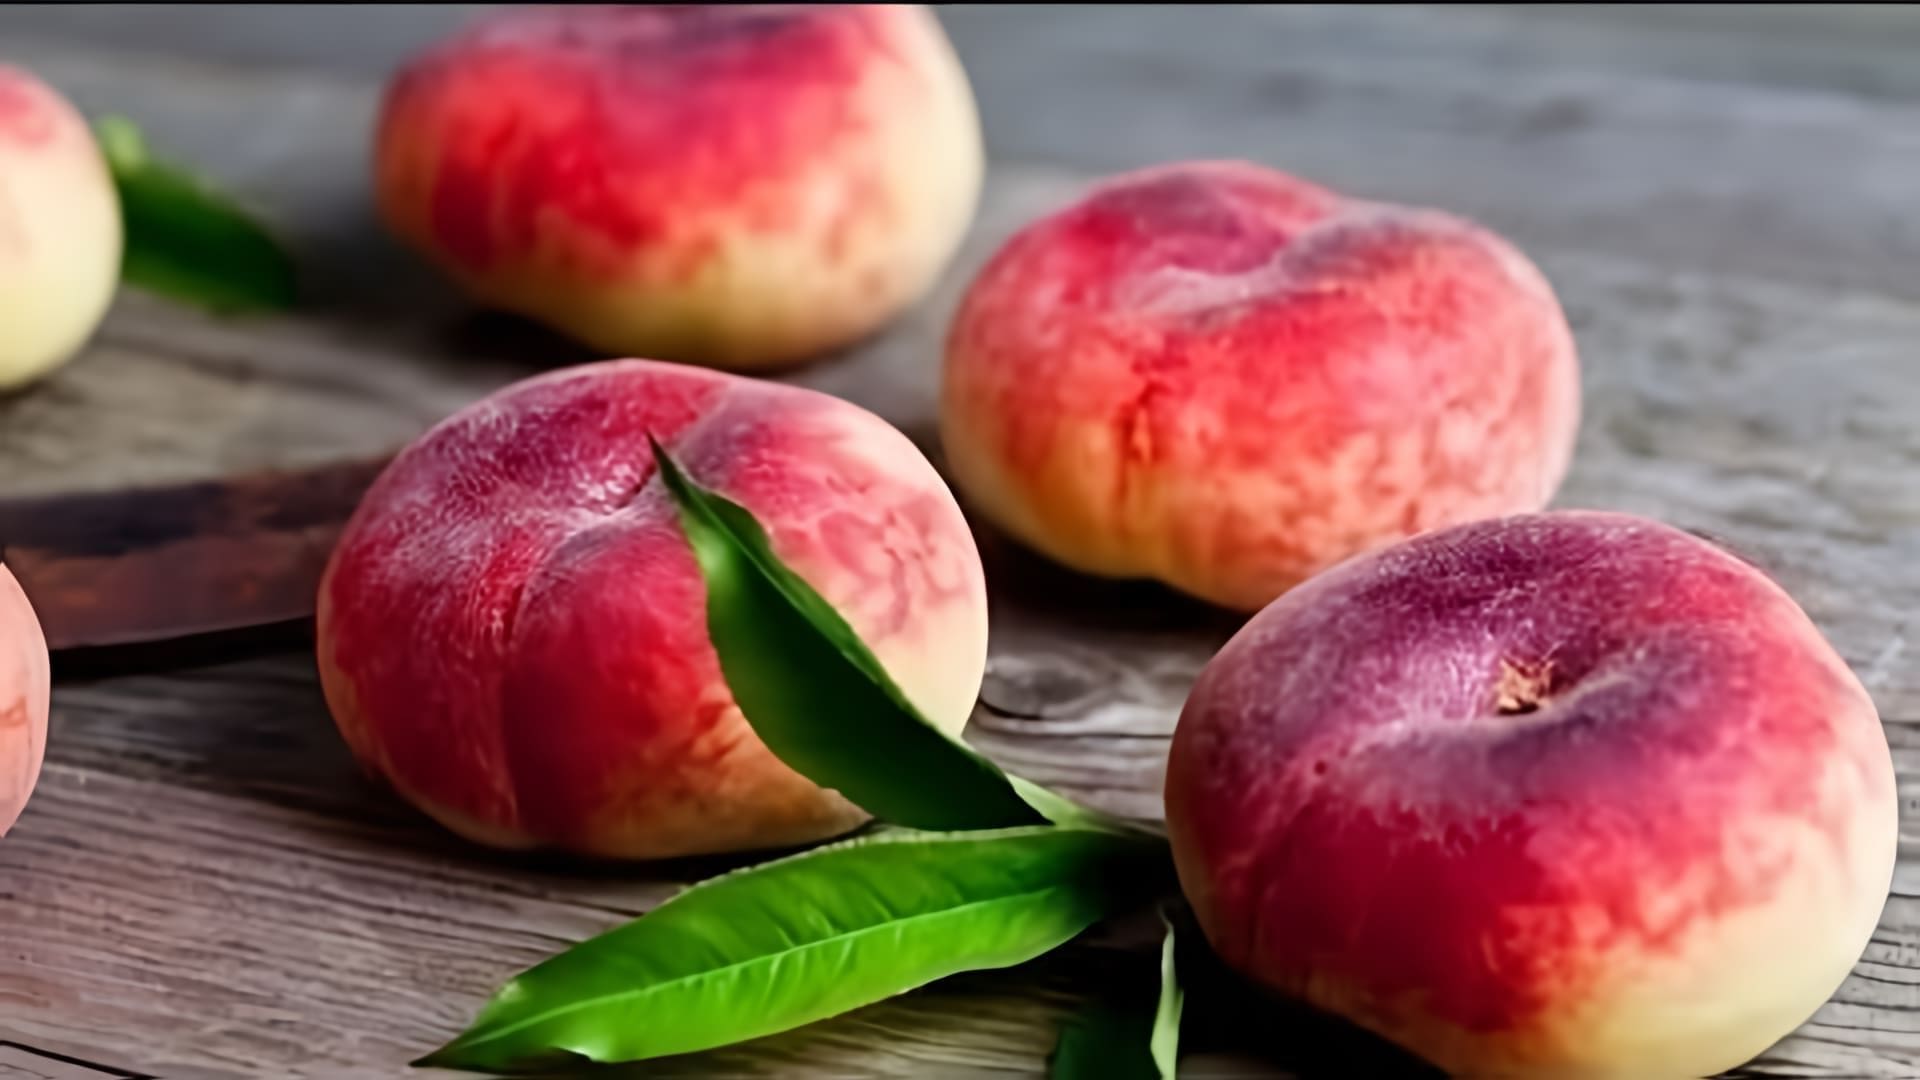 В этом видео демонстрируется процесс замораживания персиков на зиму